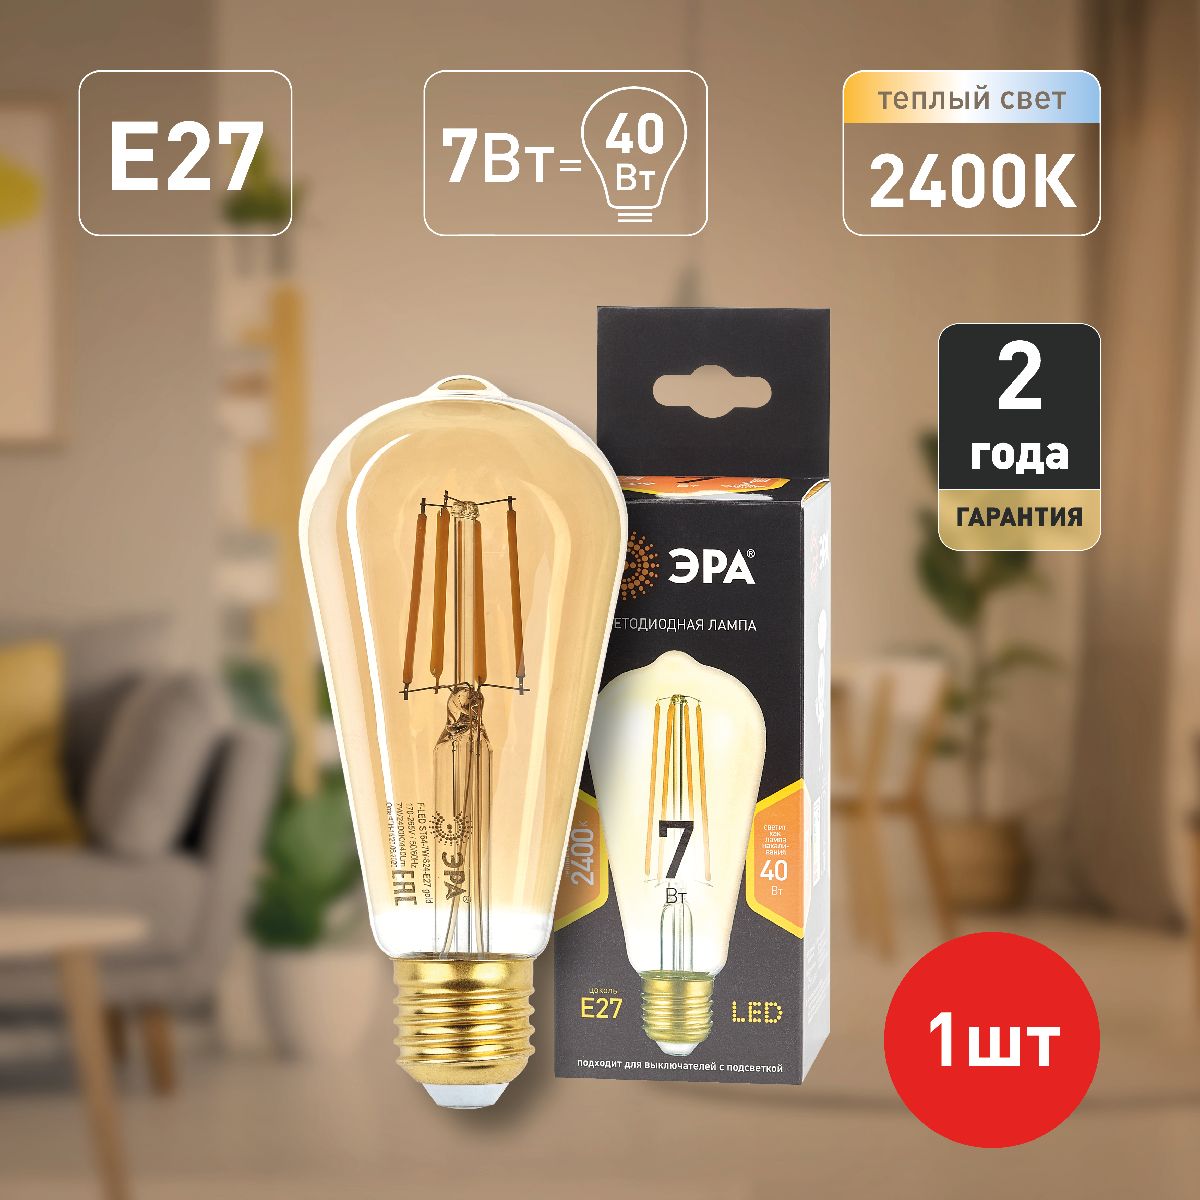 Лампа светодиодная Эра E27 7W 2400K F-LED ST64-7W-824-E27 gold Б0047664